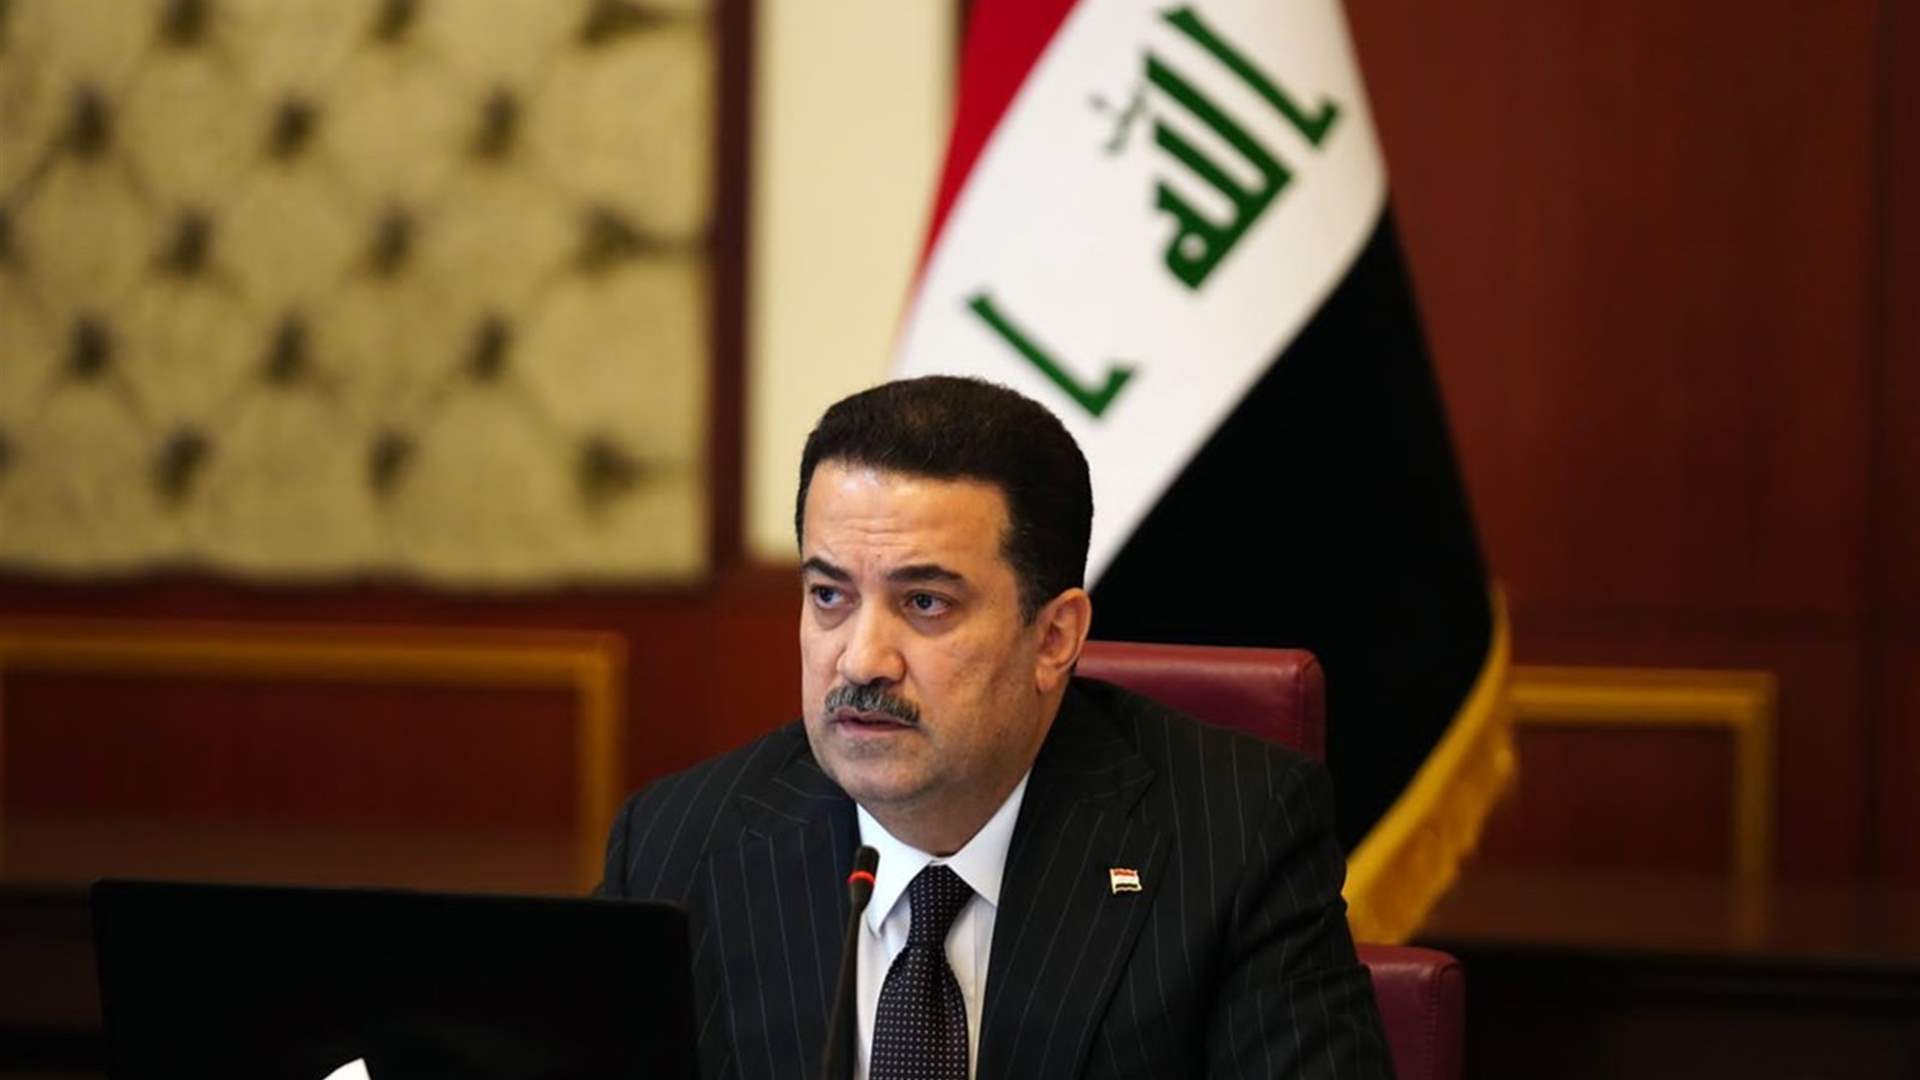 رئيس الوزراء العراقي يؤكد حصول تحويلات إحتيالية للدولار إلى الخارج